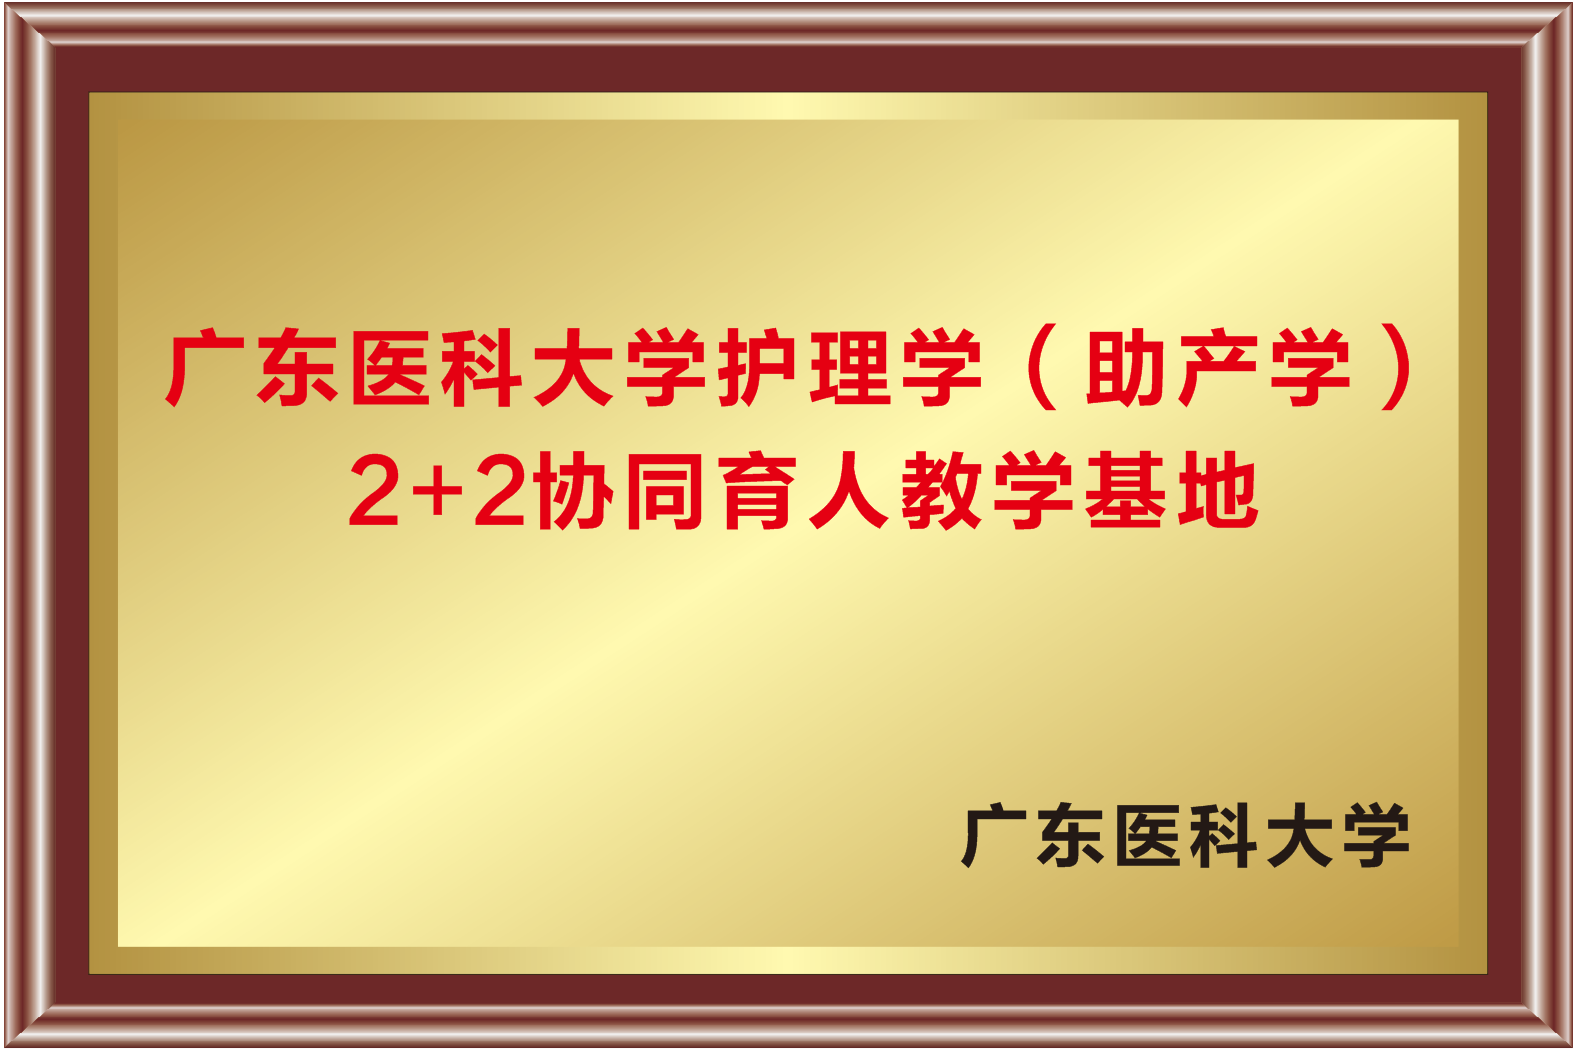 广东医科大学护理学（助产学）2+2协同育人教学基地